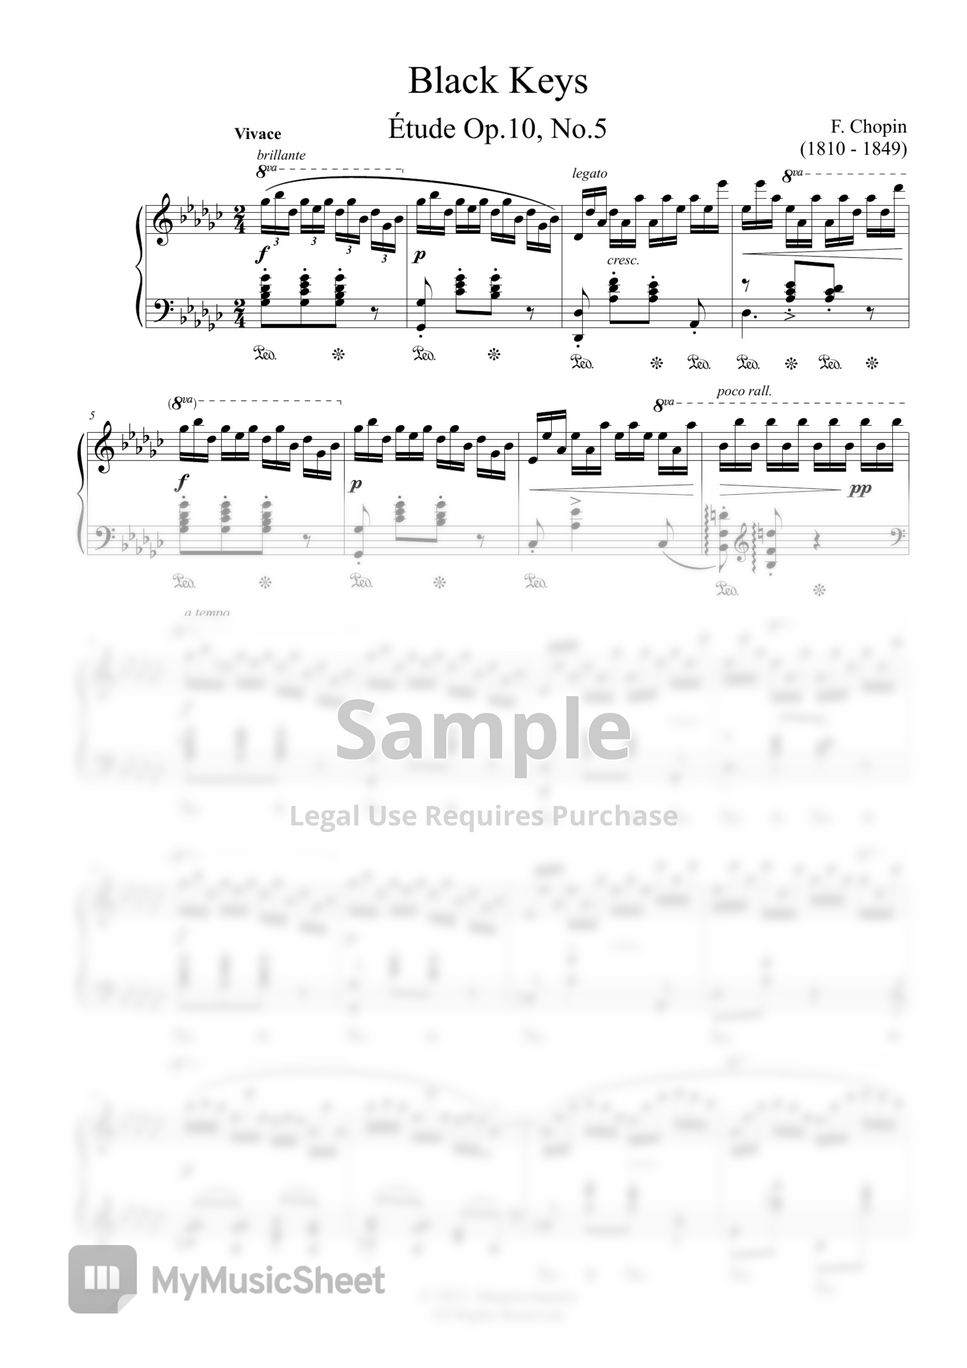 F. Chopin - Black Keys (Etude Op.10, No.5)